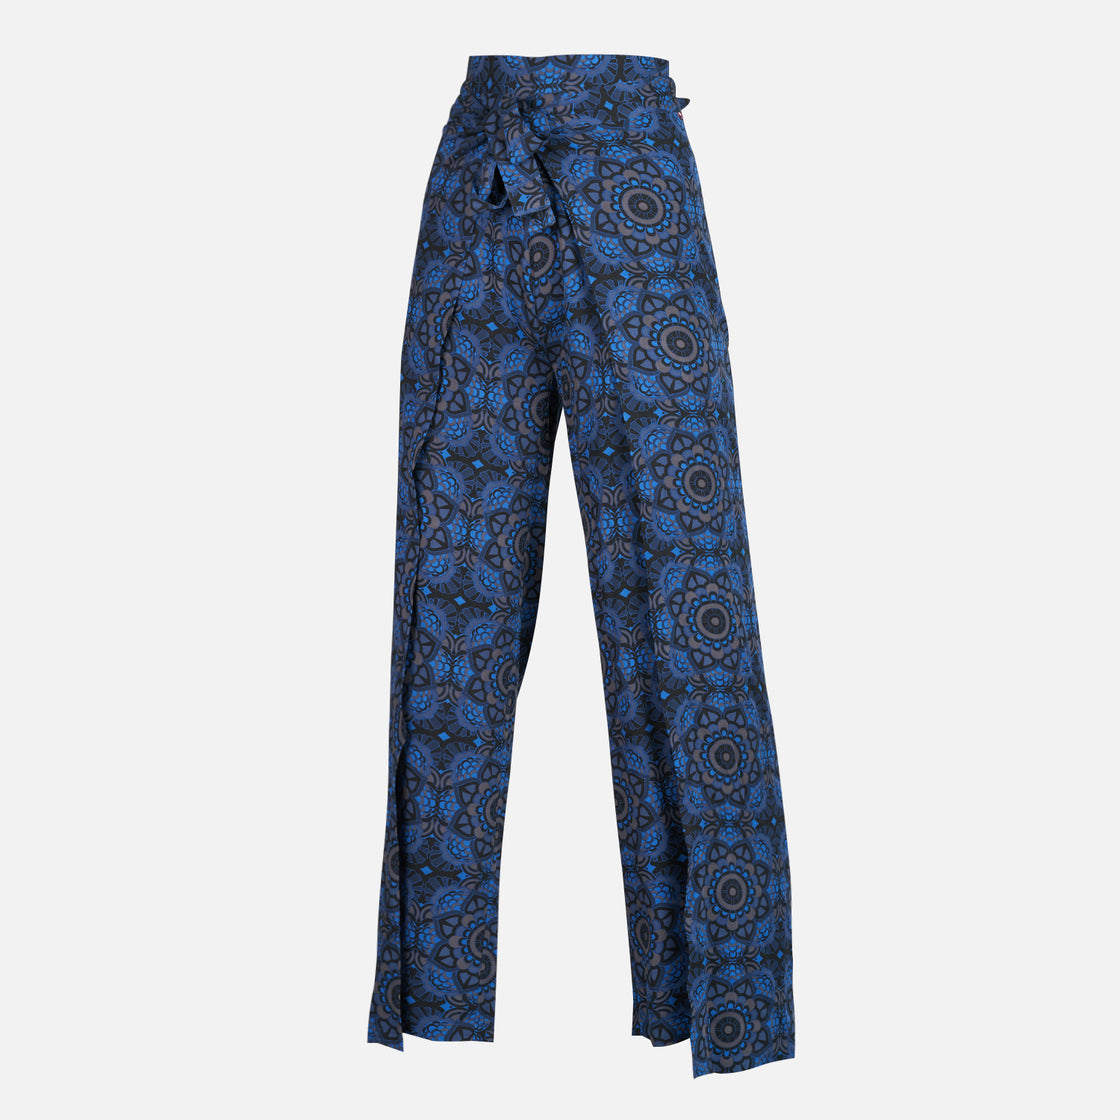 Pantalon Mujer Mar y Posa Full Print Azul Haka Honu